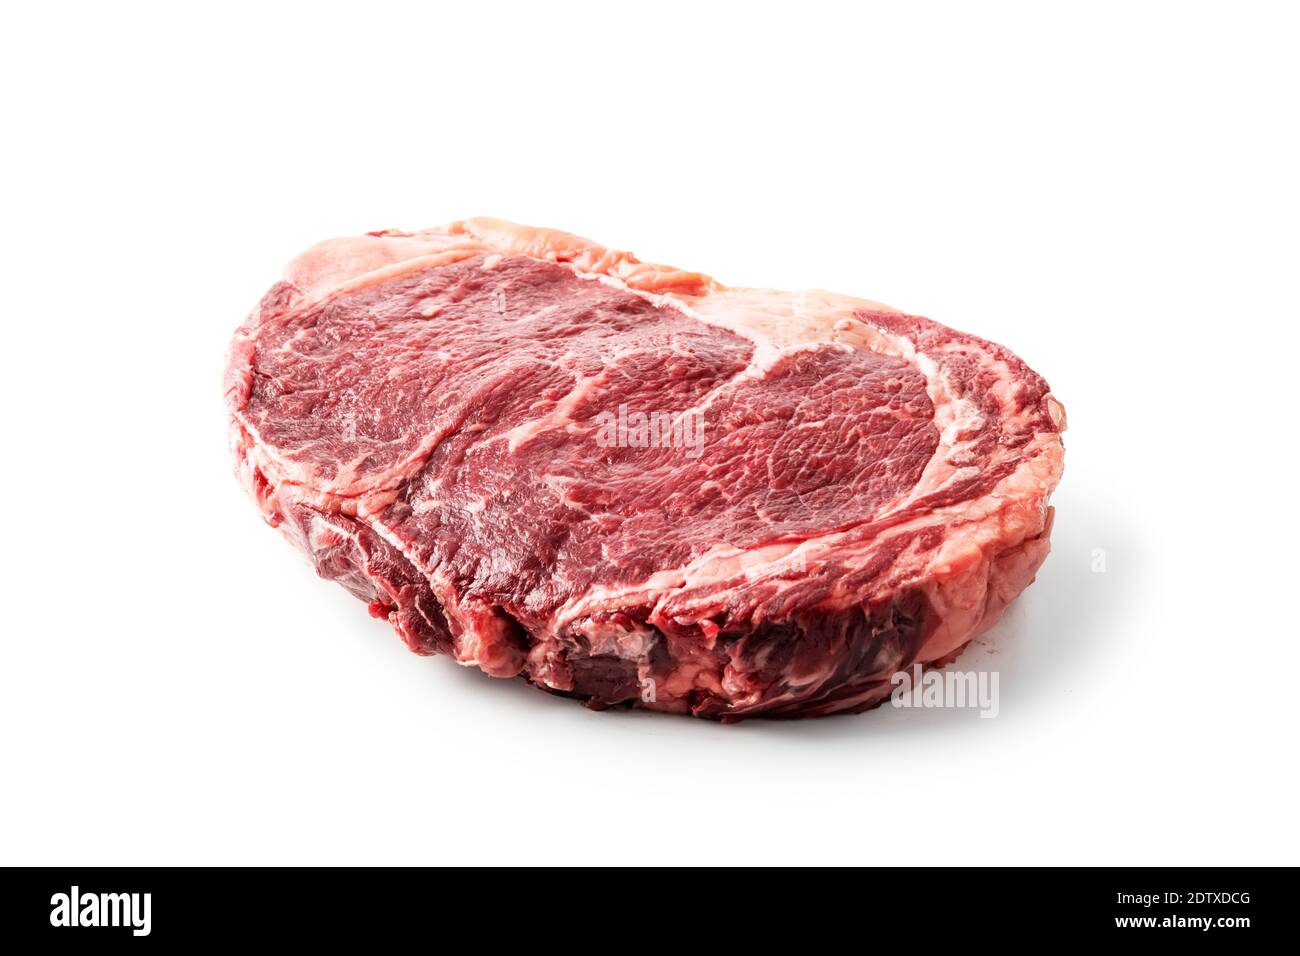 Steak de ribeye marbling isolé sur fond blanc. Côtelette de bœuf de qualité. Photographie alimentaire Banque D'Images